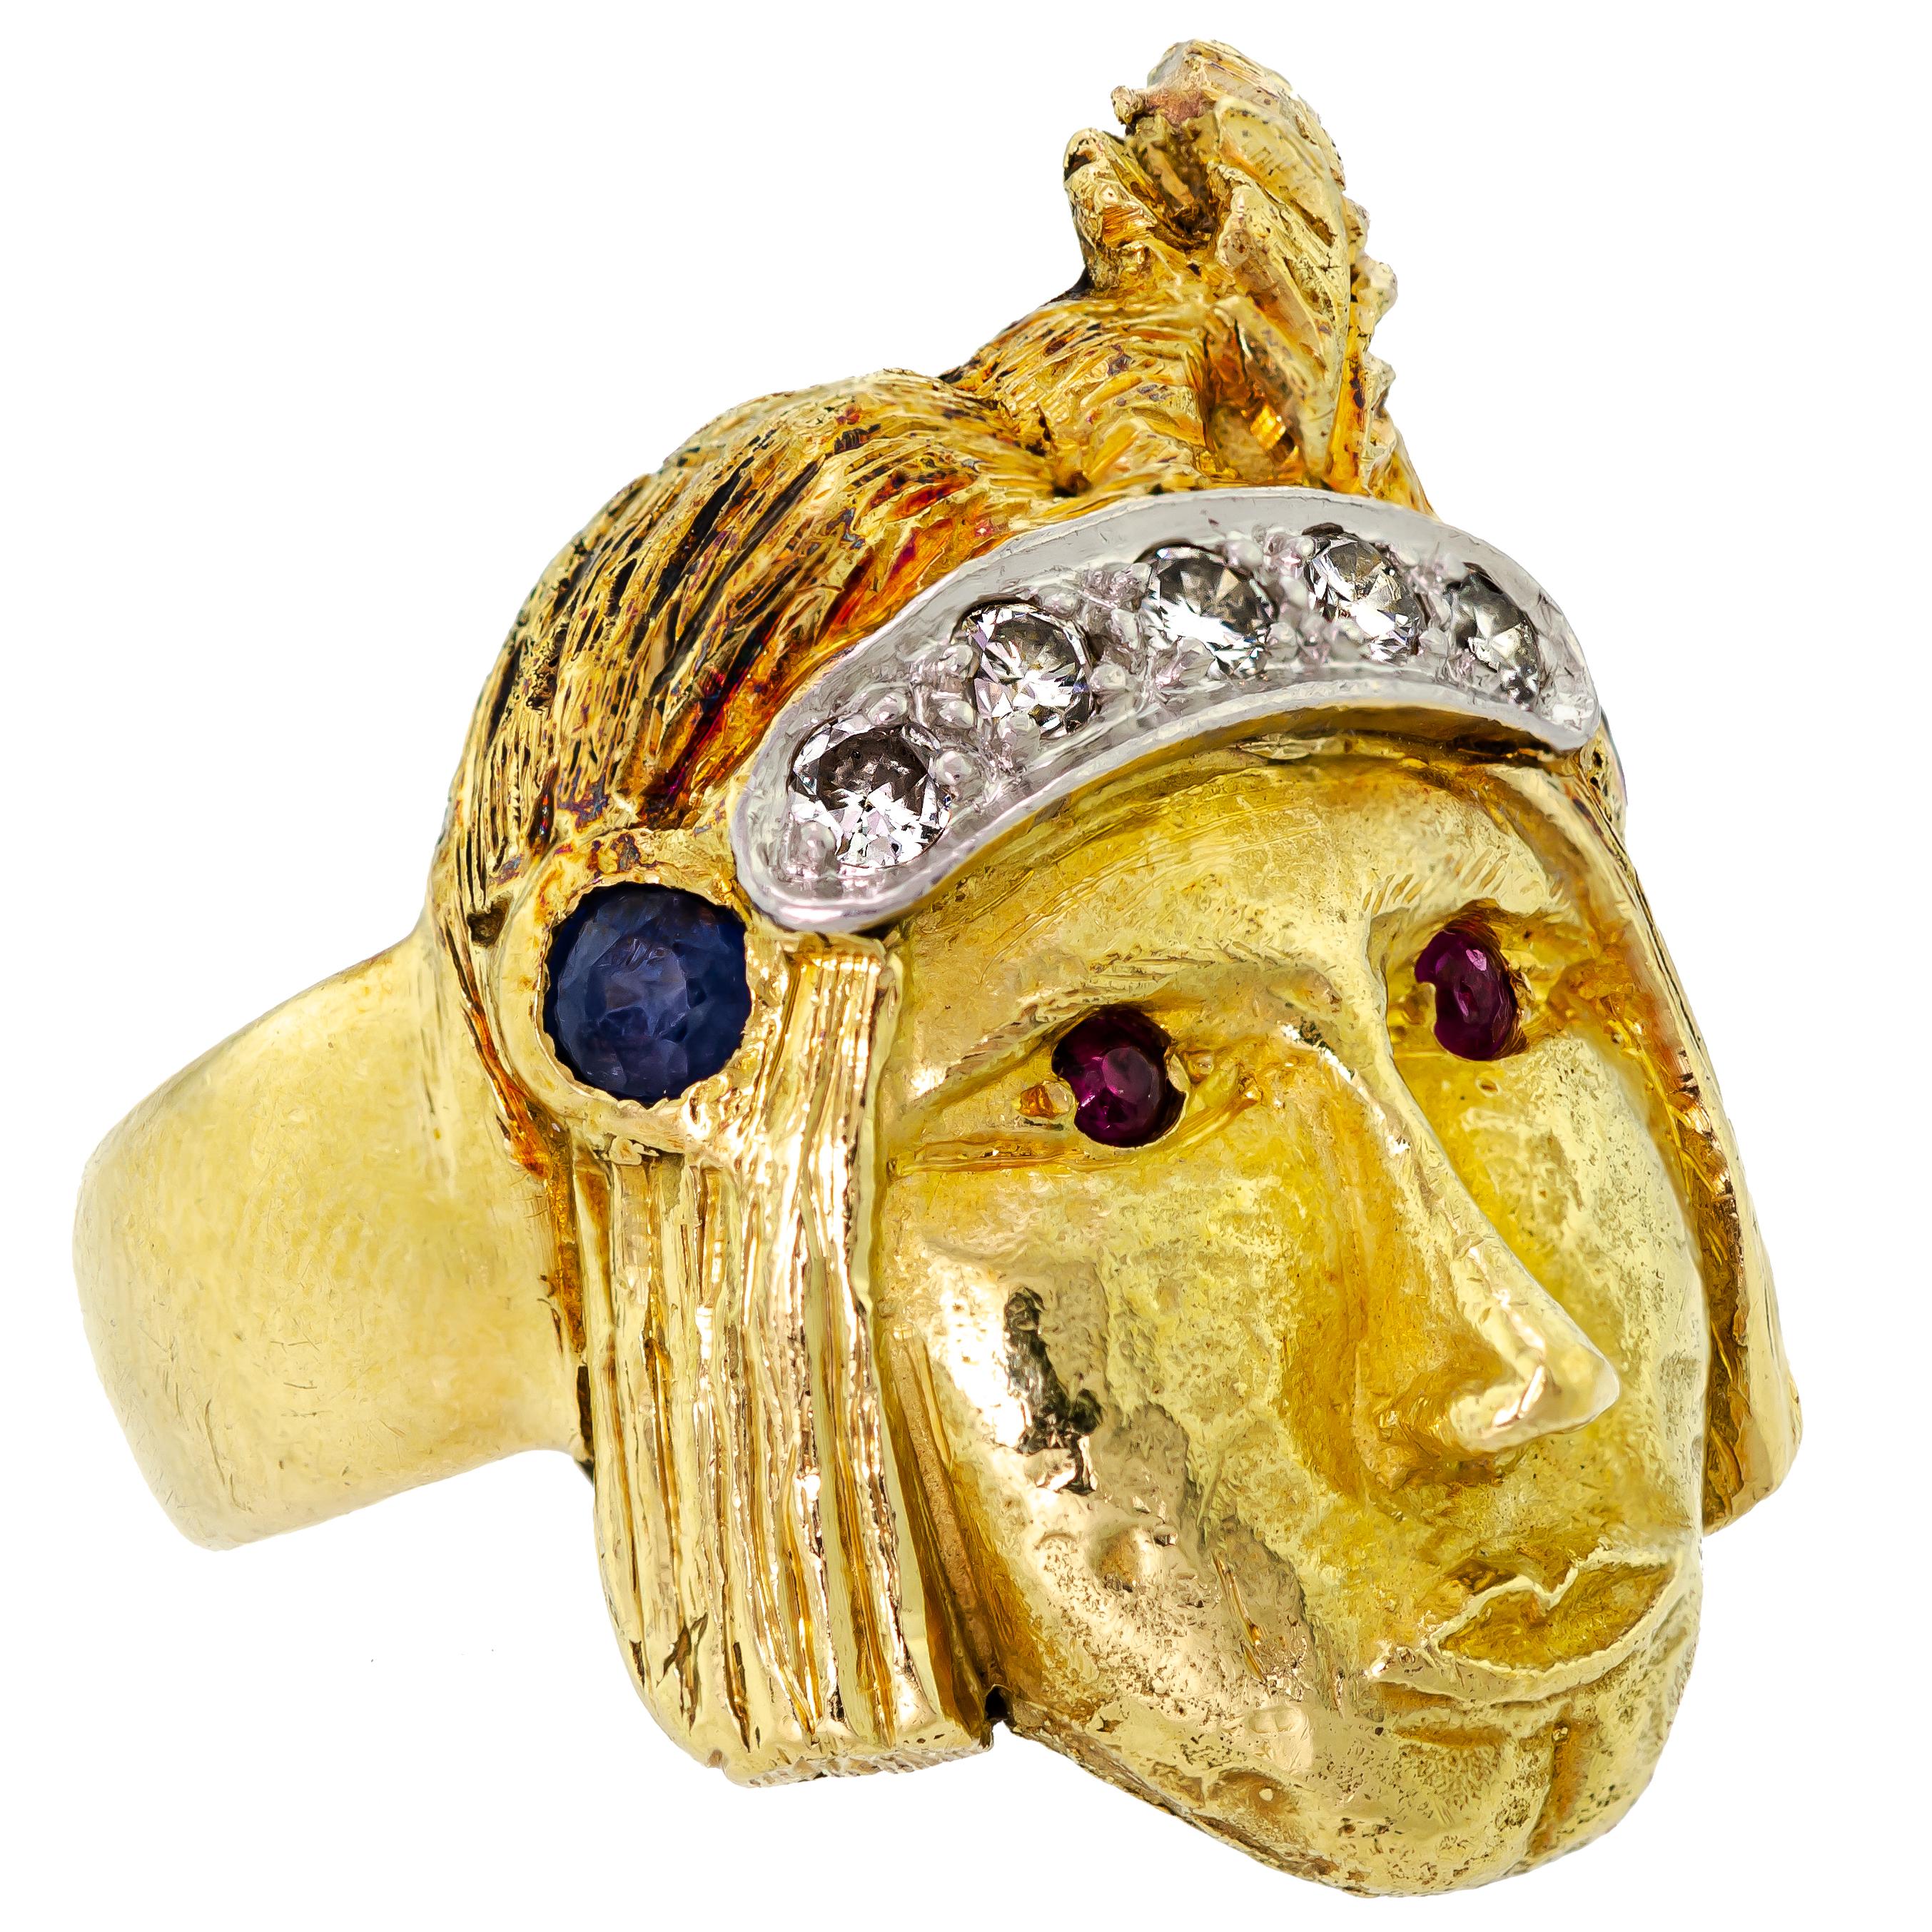 Dieser exquisite Jugendstilring aus den frühen 1900er Jahren ist eine wahre Verkörperung der Pracht von Vintage-Schmuck. Der Ring zeigt einen wunderschön geschnitzten Indianerkopf, der in aufwändiger Handarbeit aus 18 Karat Gelbgold gefertigt wurde.